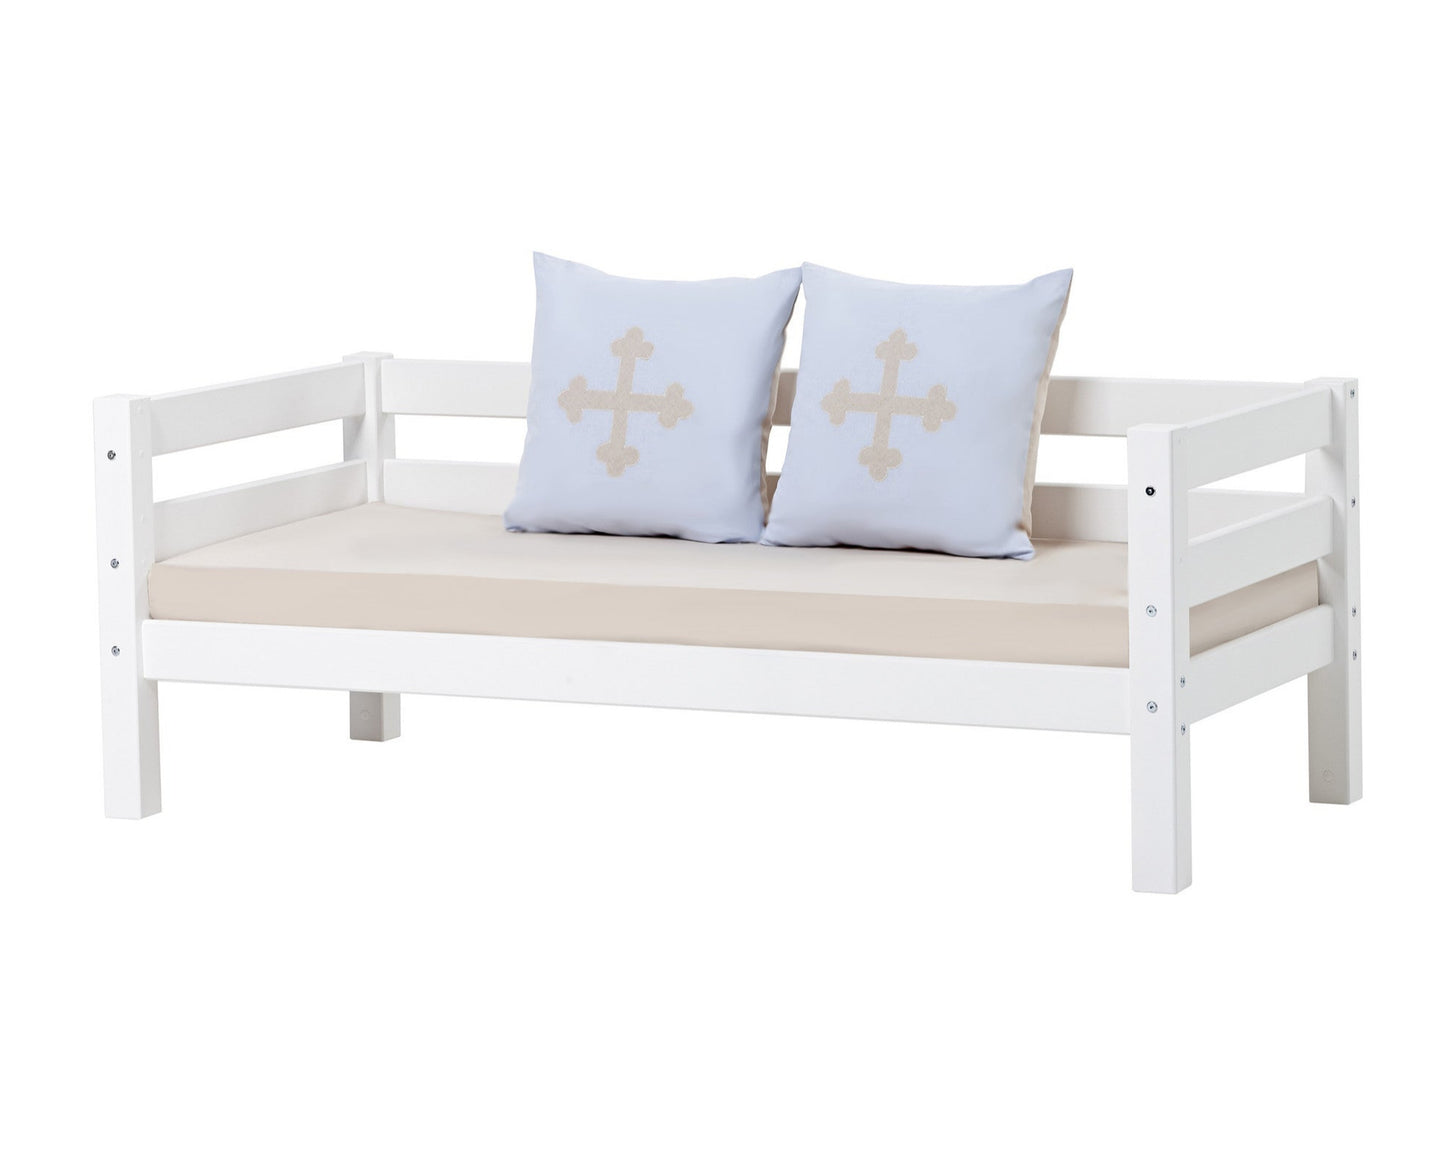 Fairytale Knight - Cushion set - 2 pillows - 50x50 cm